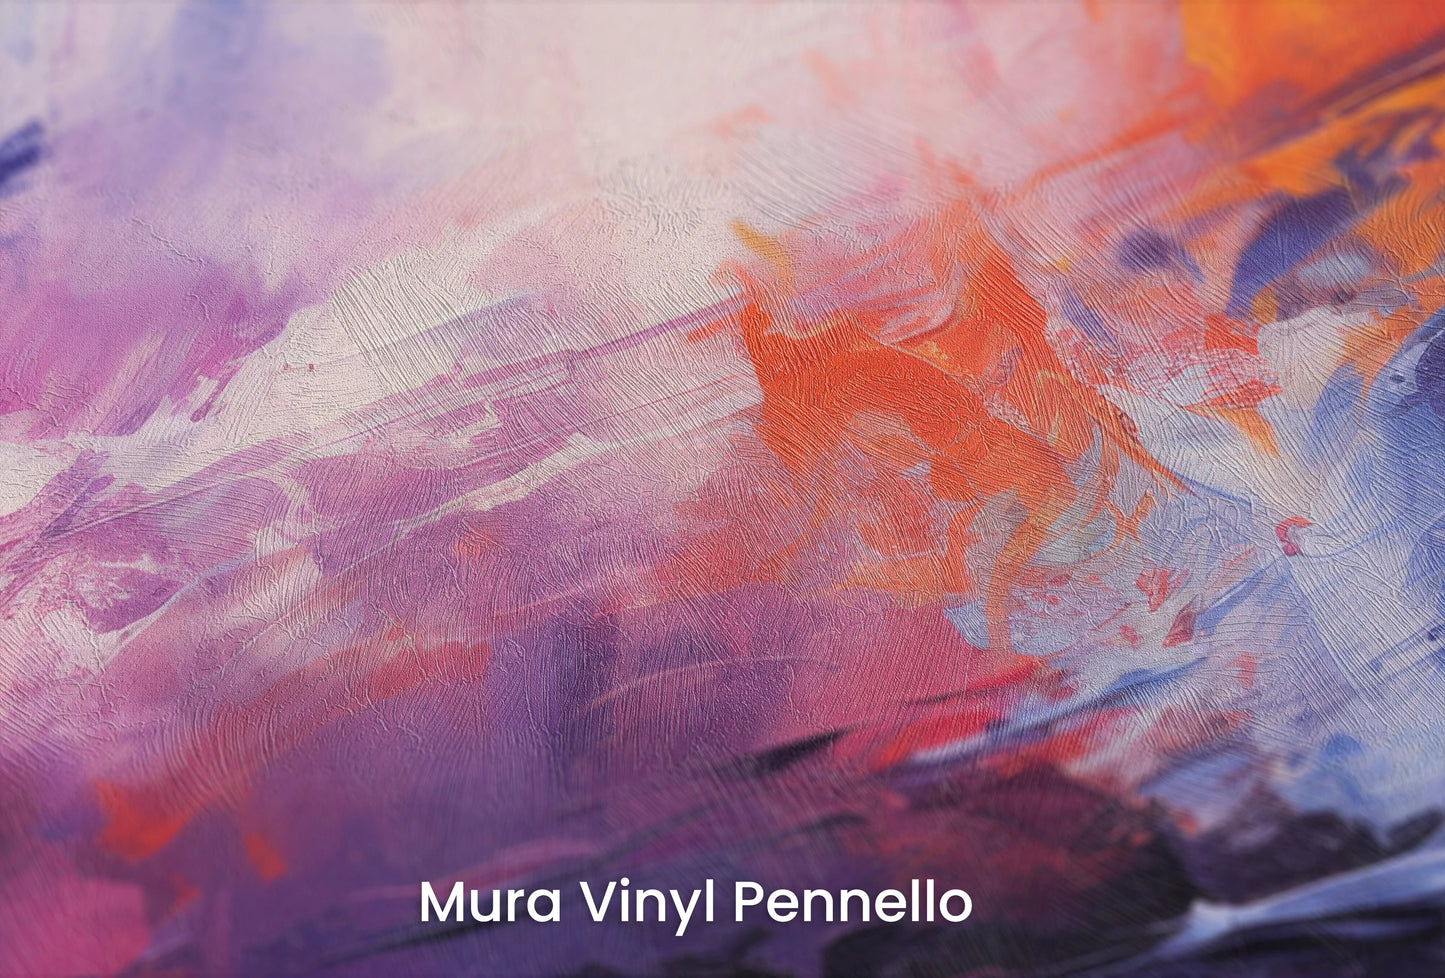 Zbliżenie na artystyczną fototapetę o nazwie Vivid Dreamscape na podłożu Mura Vinyl Pennello - faktura pociągnięć pędzla malarskiego.